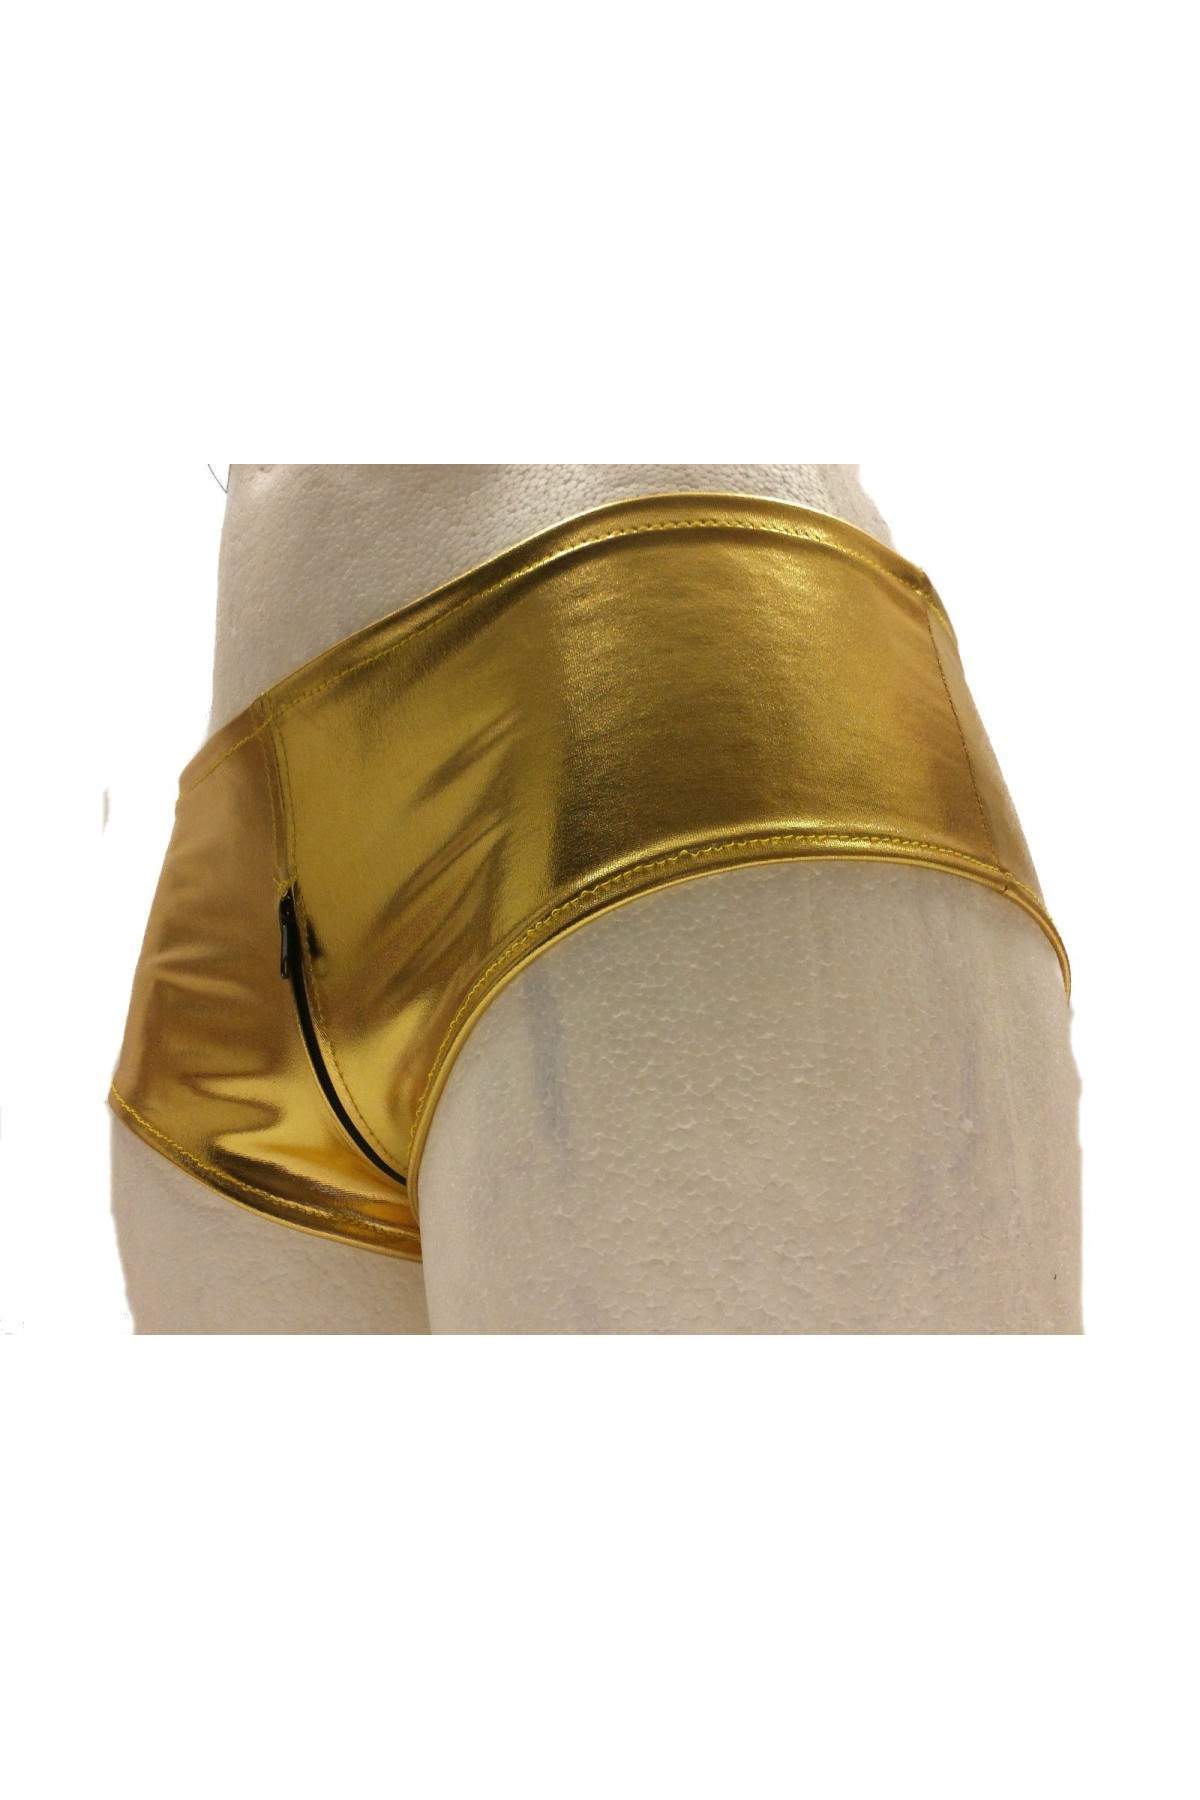 Kauf auf Rechnung Leder-Optik Ouvert Hotpants Gold mit Reißverschlu... - 